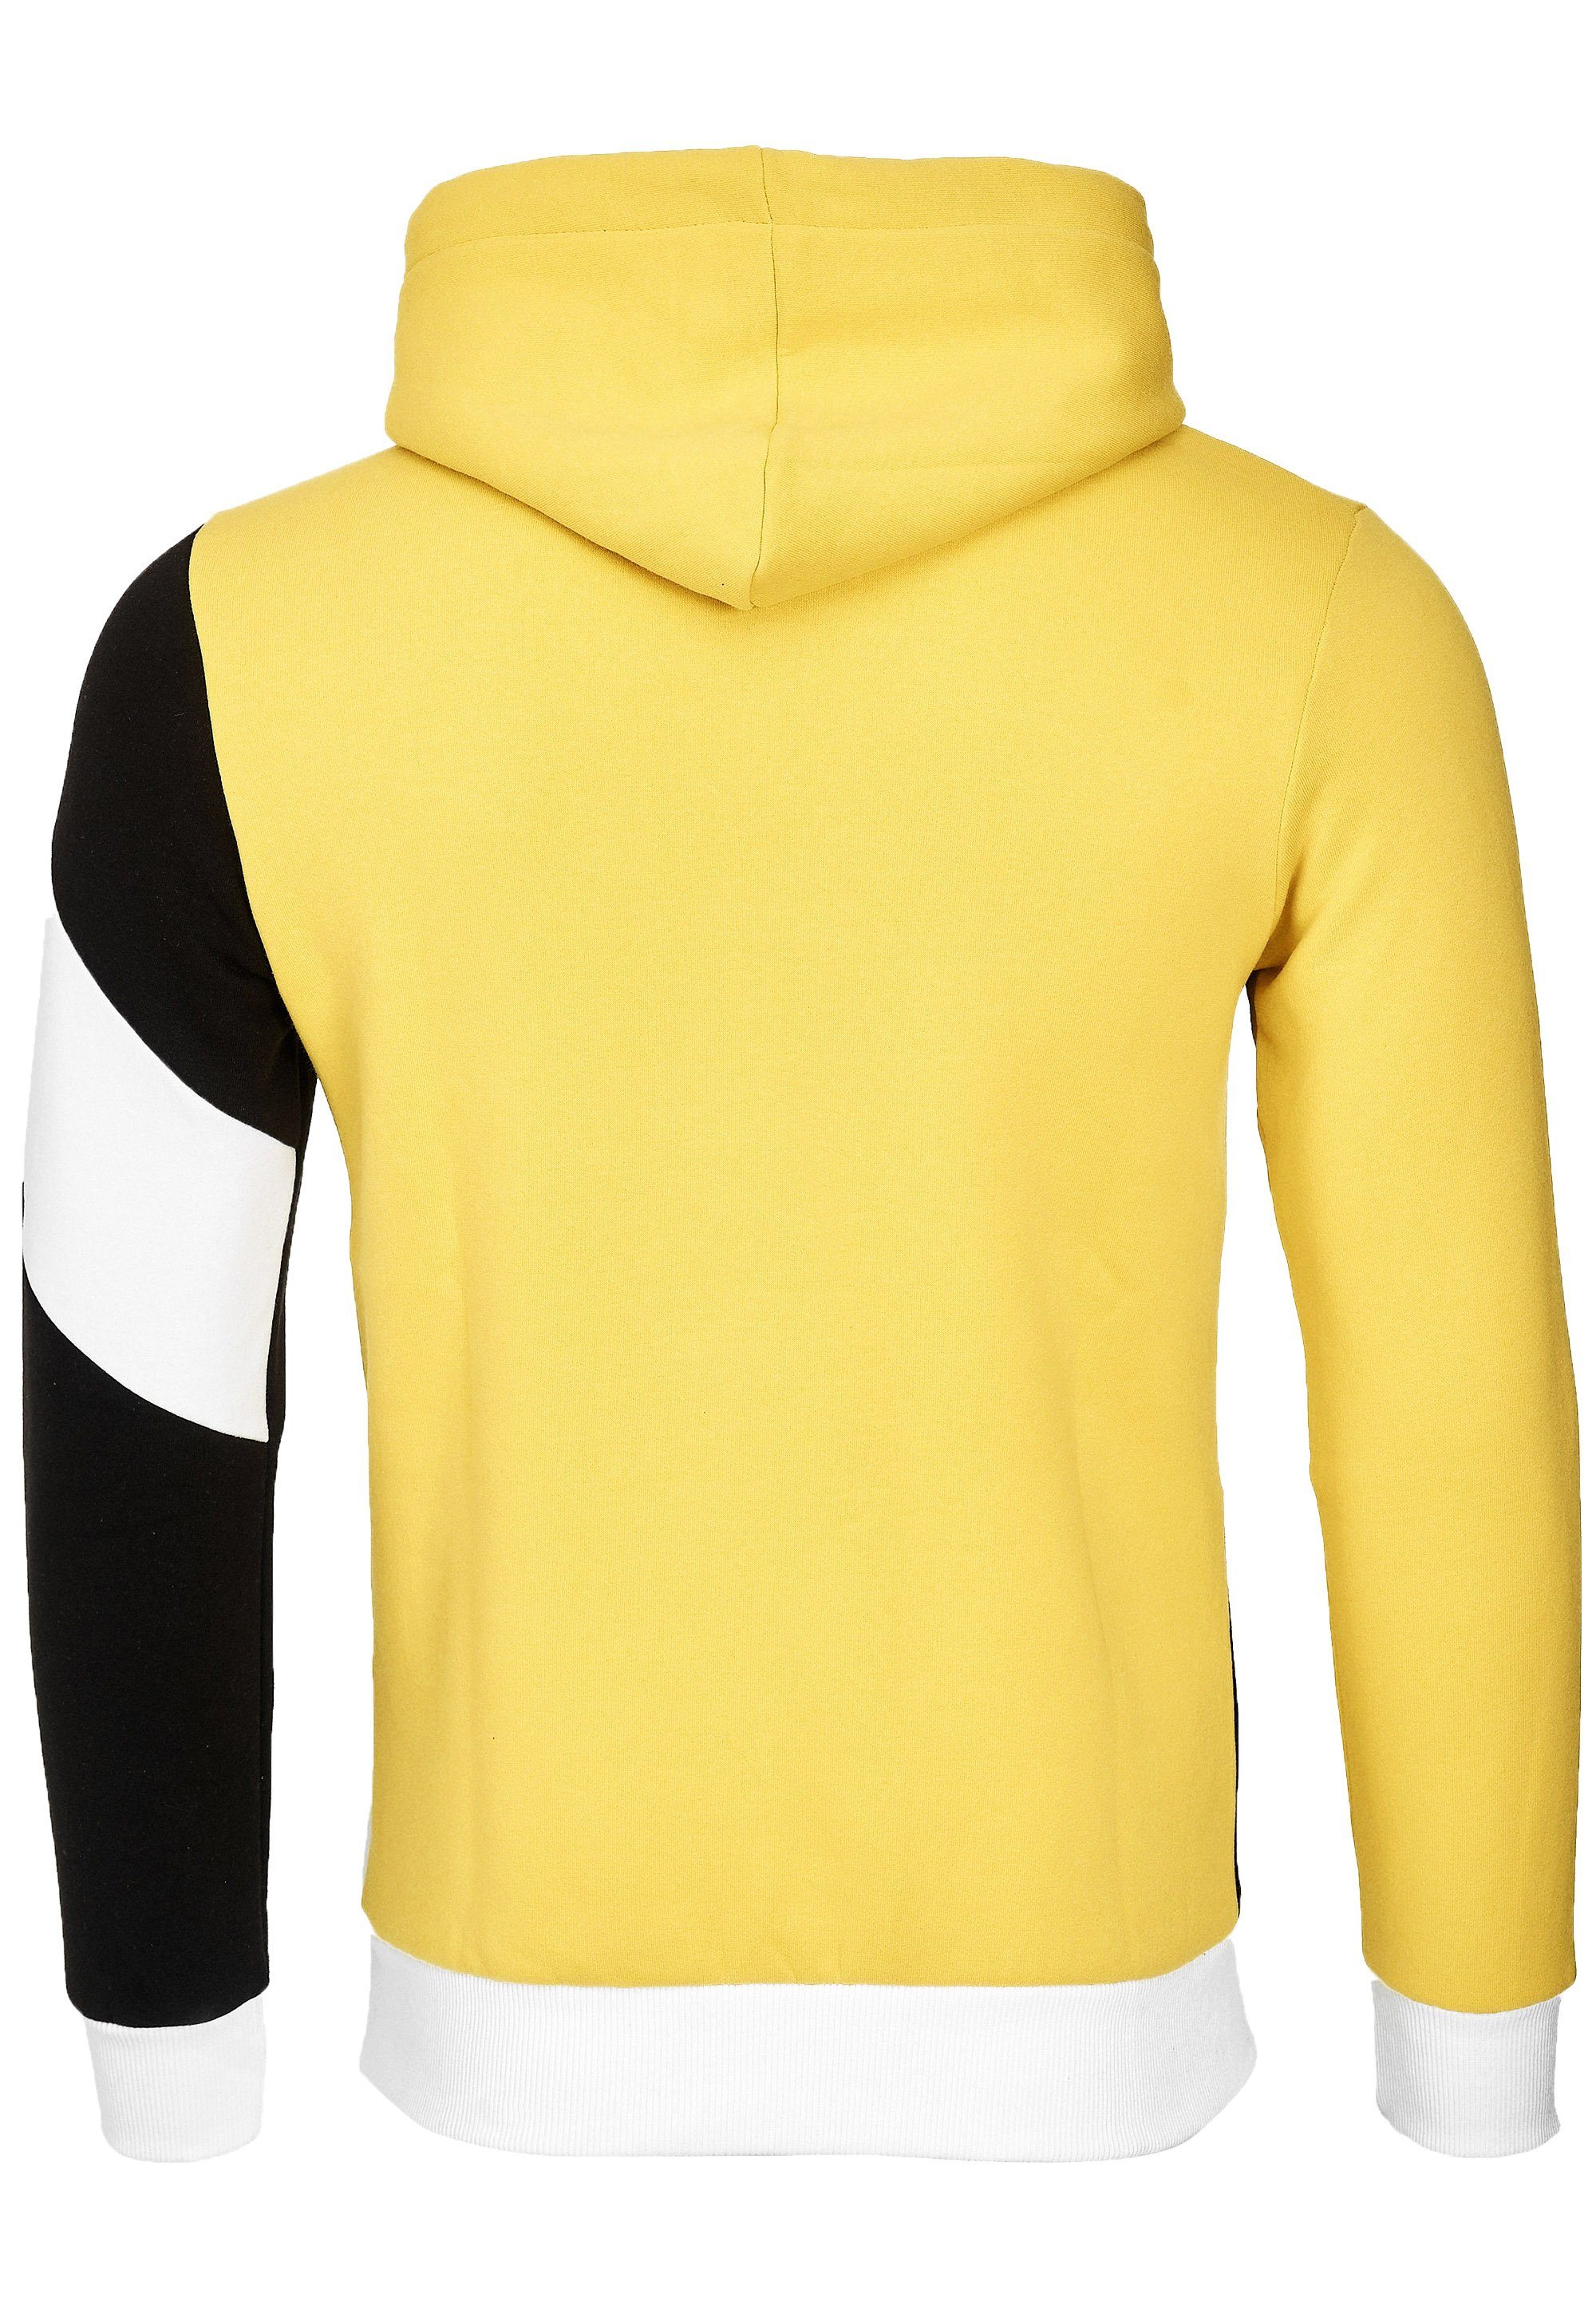 Neal gelb-schwarz sportlichem in Rusty Kapuzensweatshirt Design